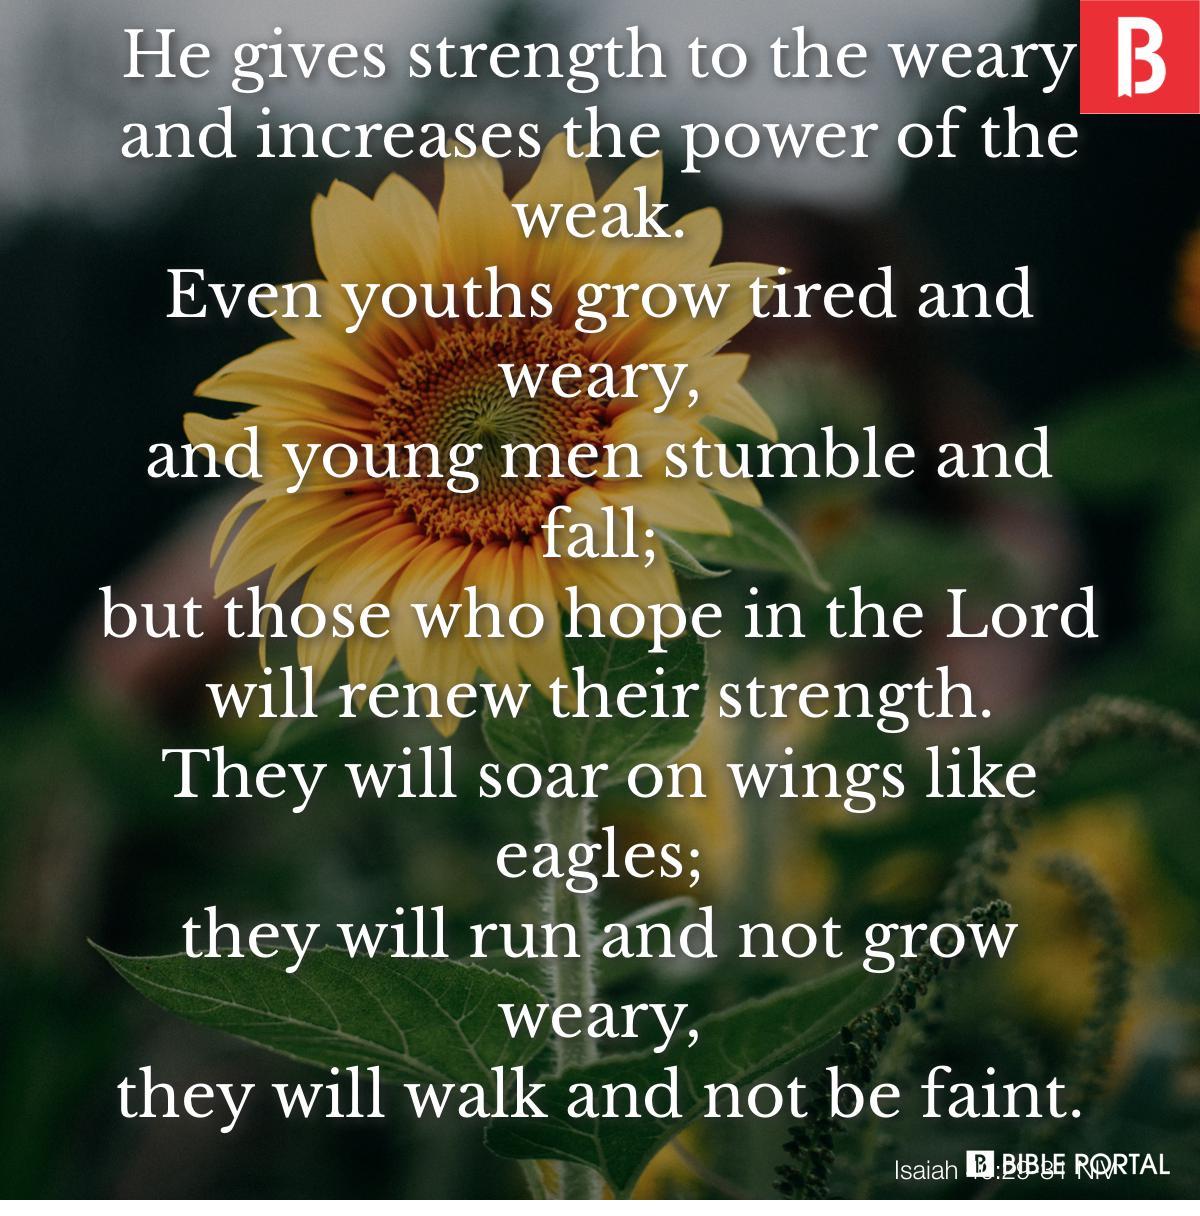 Isaiah 40:29-31 NIV